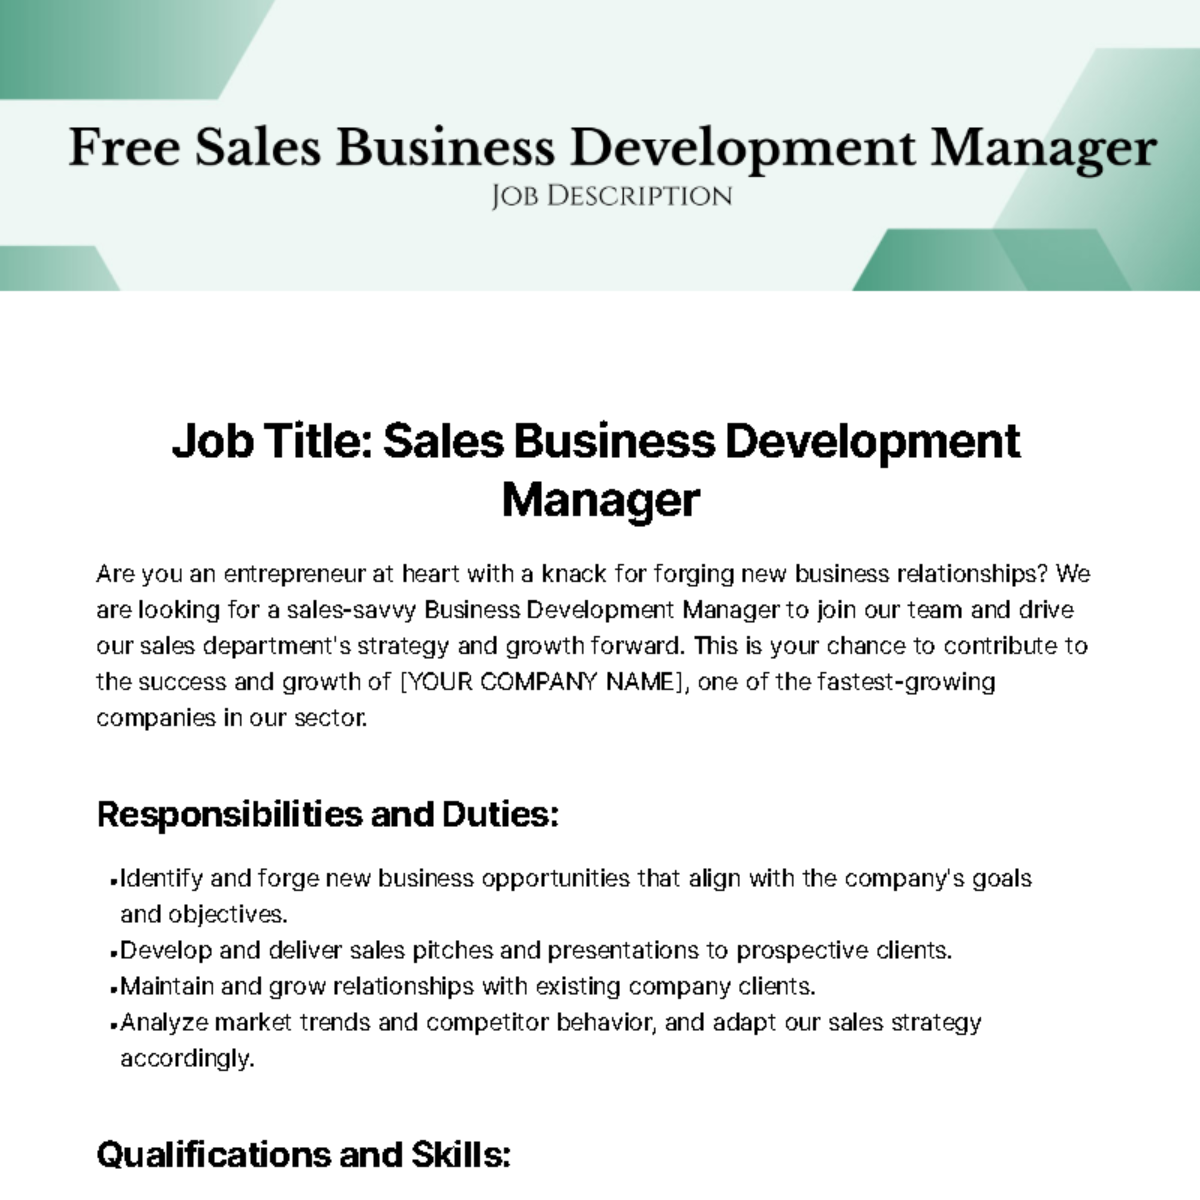 Sales Business Development Manager Job Description Template